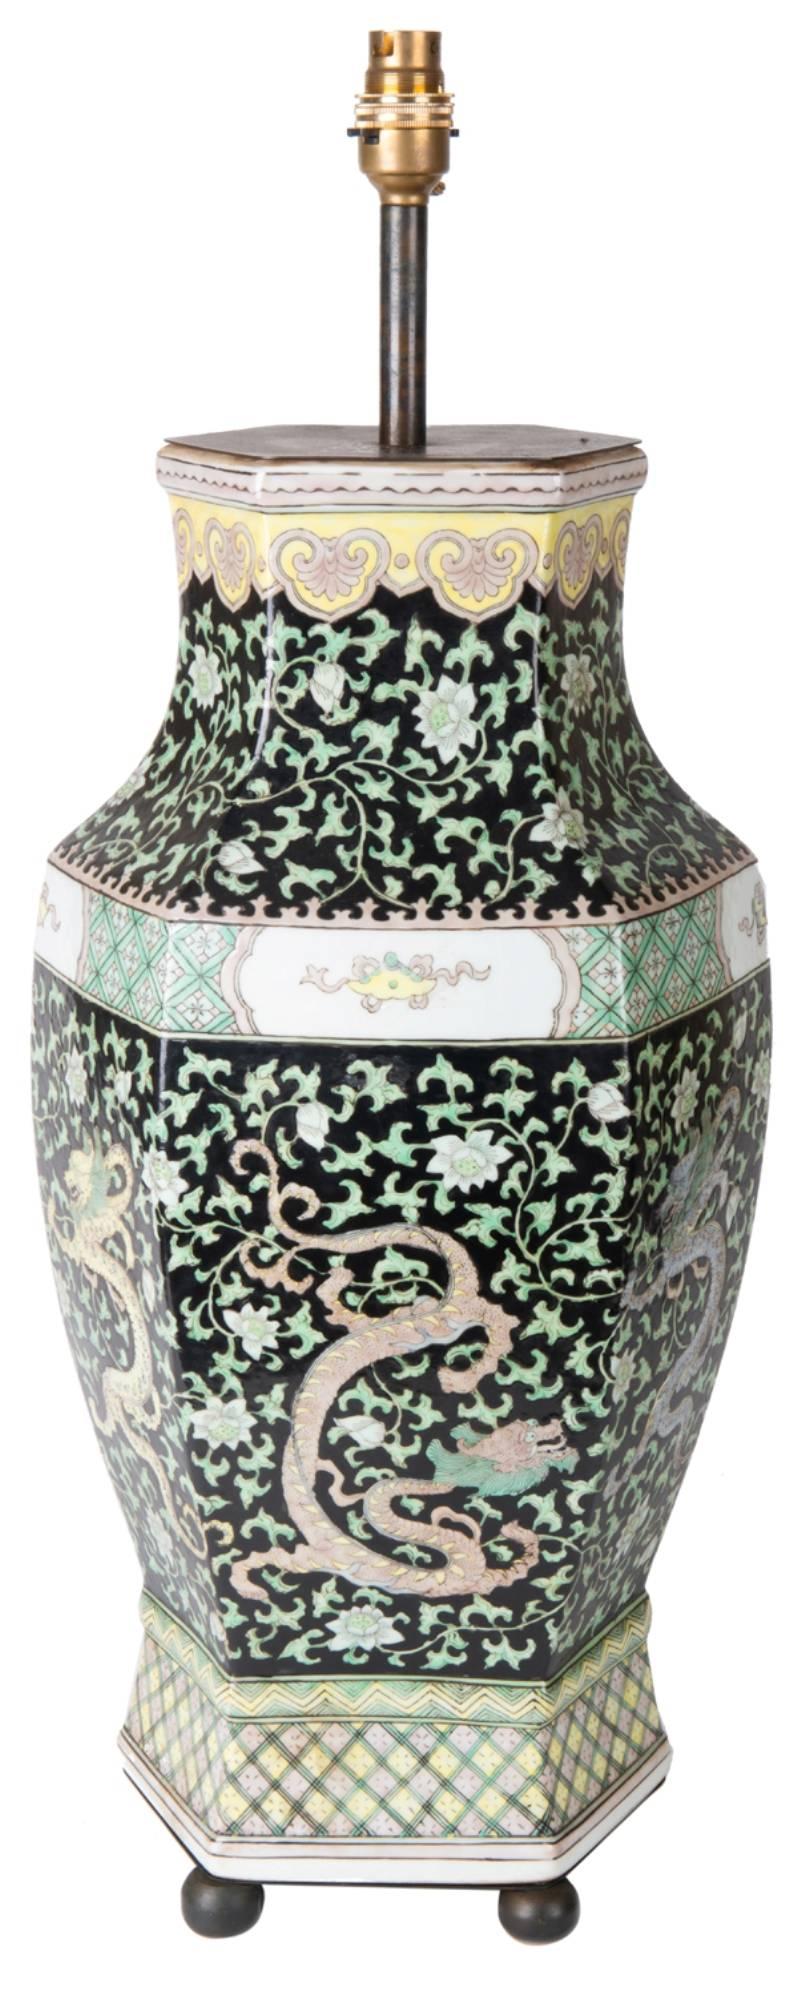 Un vase ou une lampe de la famille verte chinoise du XIXe siècle de bonne qualité. Fond noir avec un décor de feuillage vert et un dragon mythique parmi les autres. Les bordures sont jaunes et vertes et reposent sur des pieds en bronze.